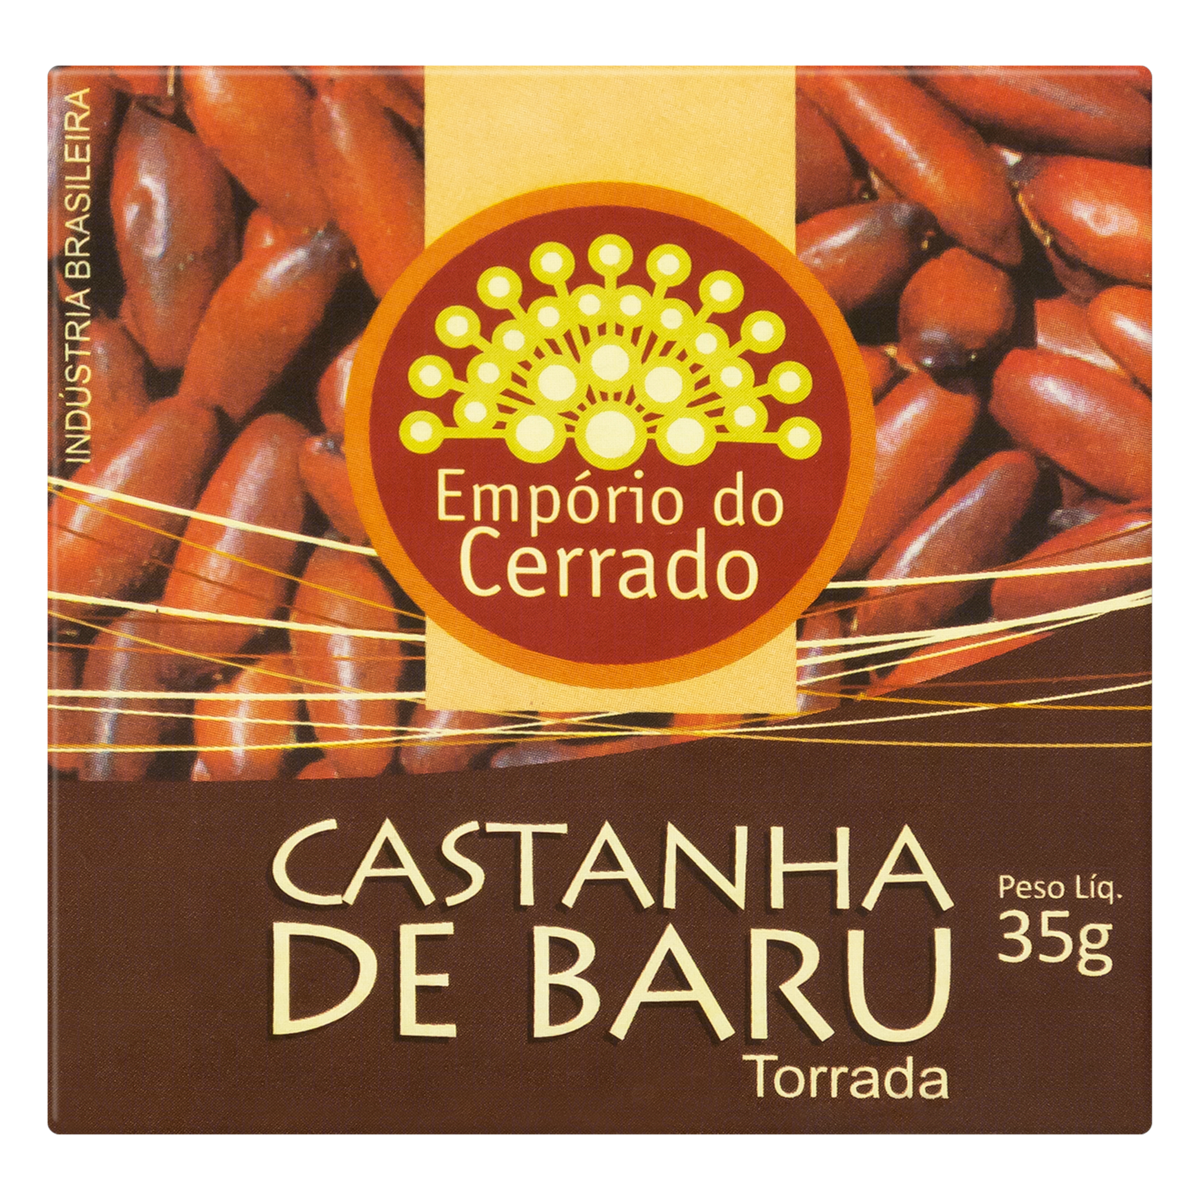 7898340610033 - CASTANHA-DE-BARU TORRADA EMPÓRIO DO CERRADO CAIXA 35G